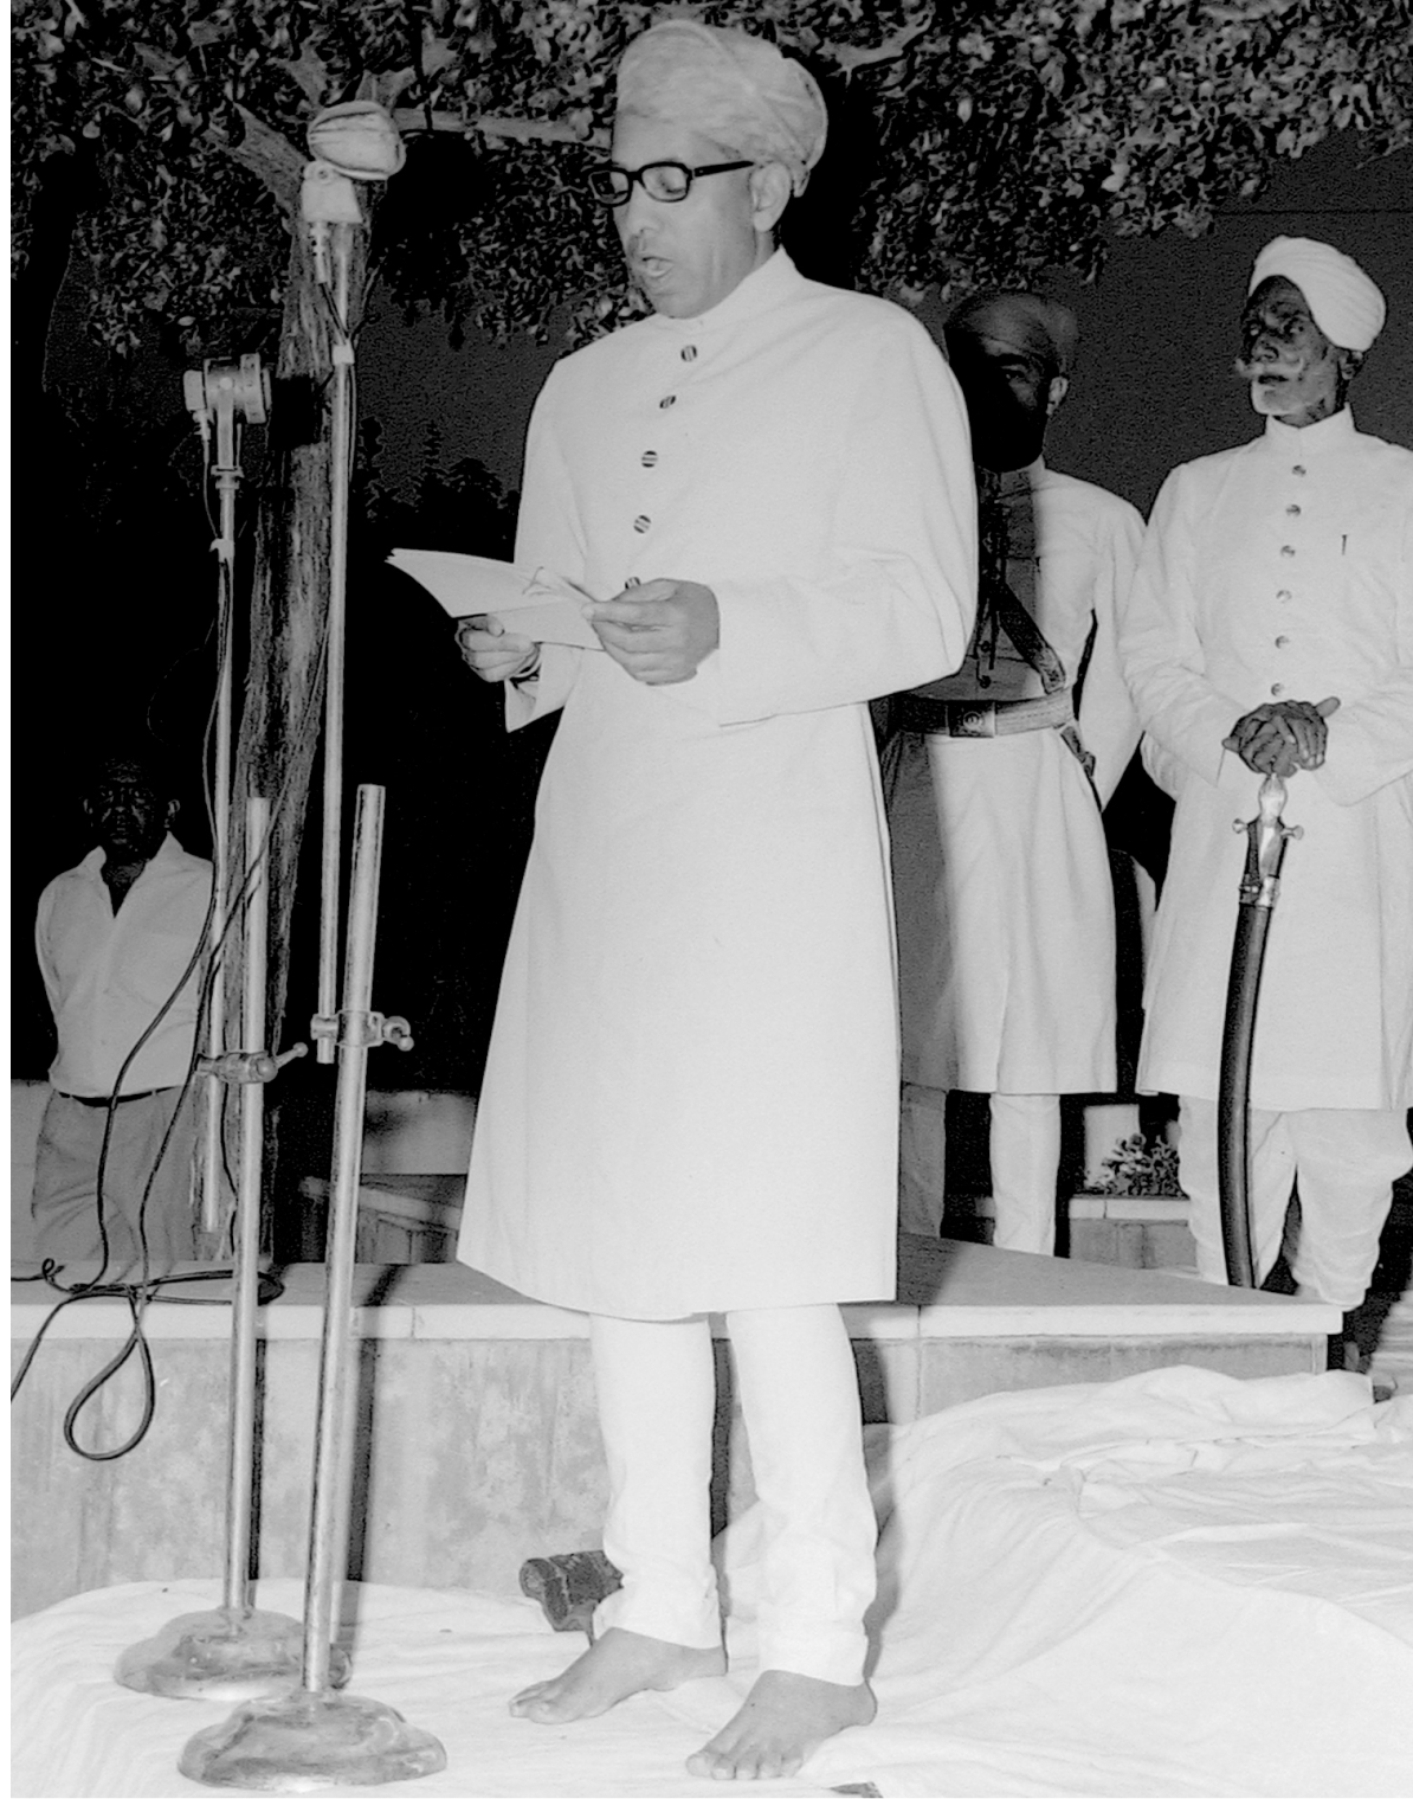 धर्मरक्षक महाराणा भगवत सिंह जी मेवाड की १००वीं जयन्ती